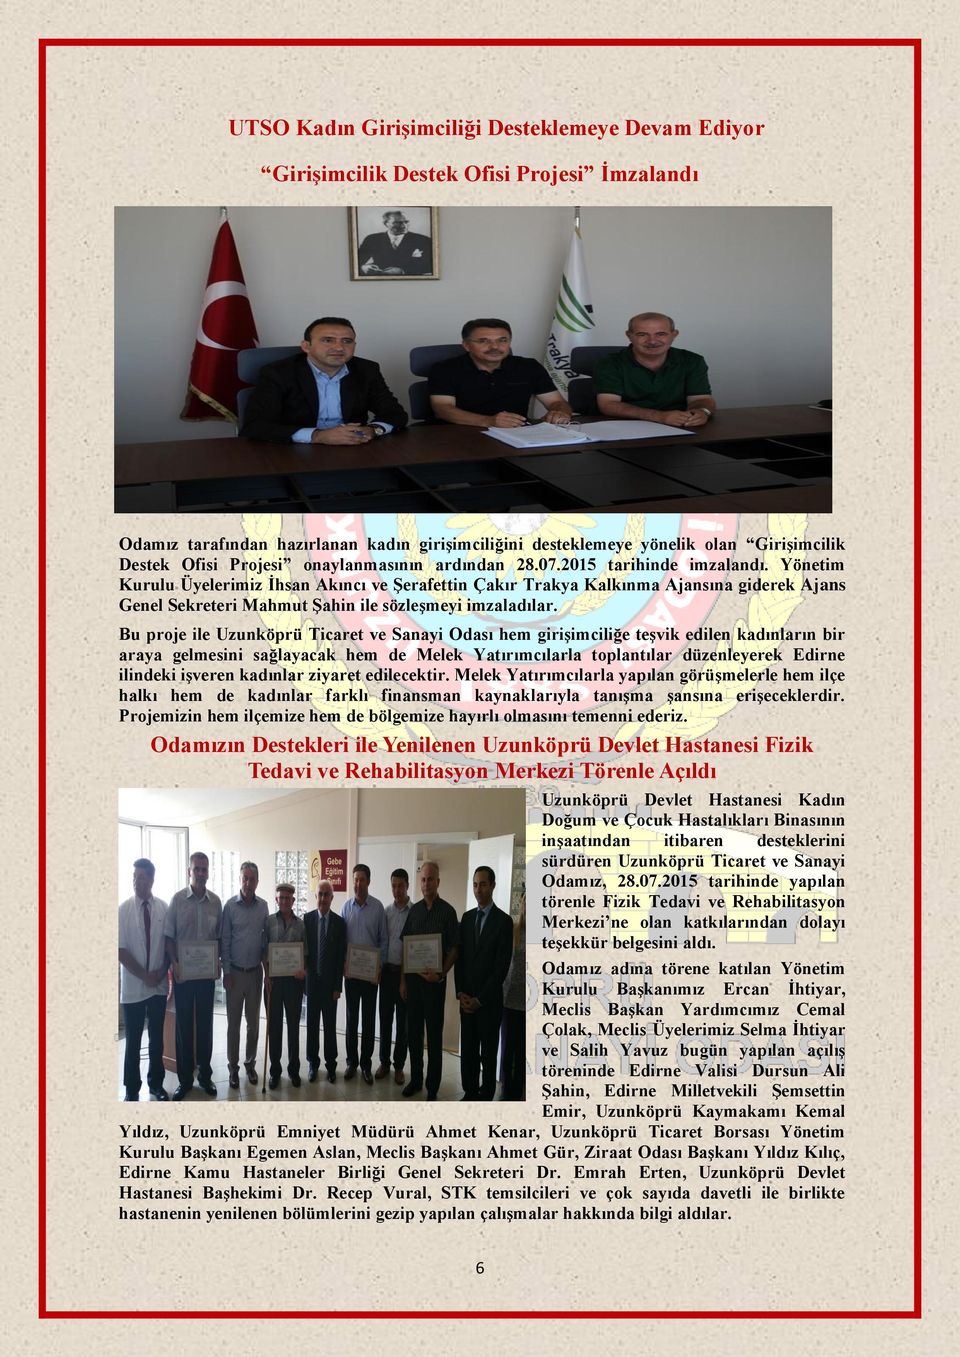 Yönetim Kurulu Üyelerimiz İhsan Akıncı ve Şerafettin Çakır Trakya Kalkınma Ajansına giderek Ajans Genel Sekreteri Mahmut Şahin ile sözleşmeyi imzaladılar.